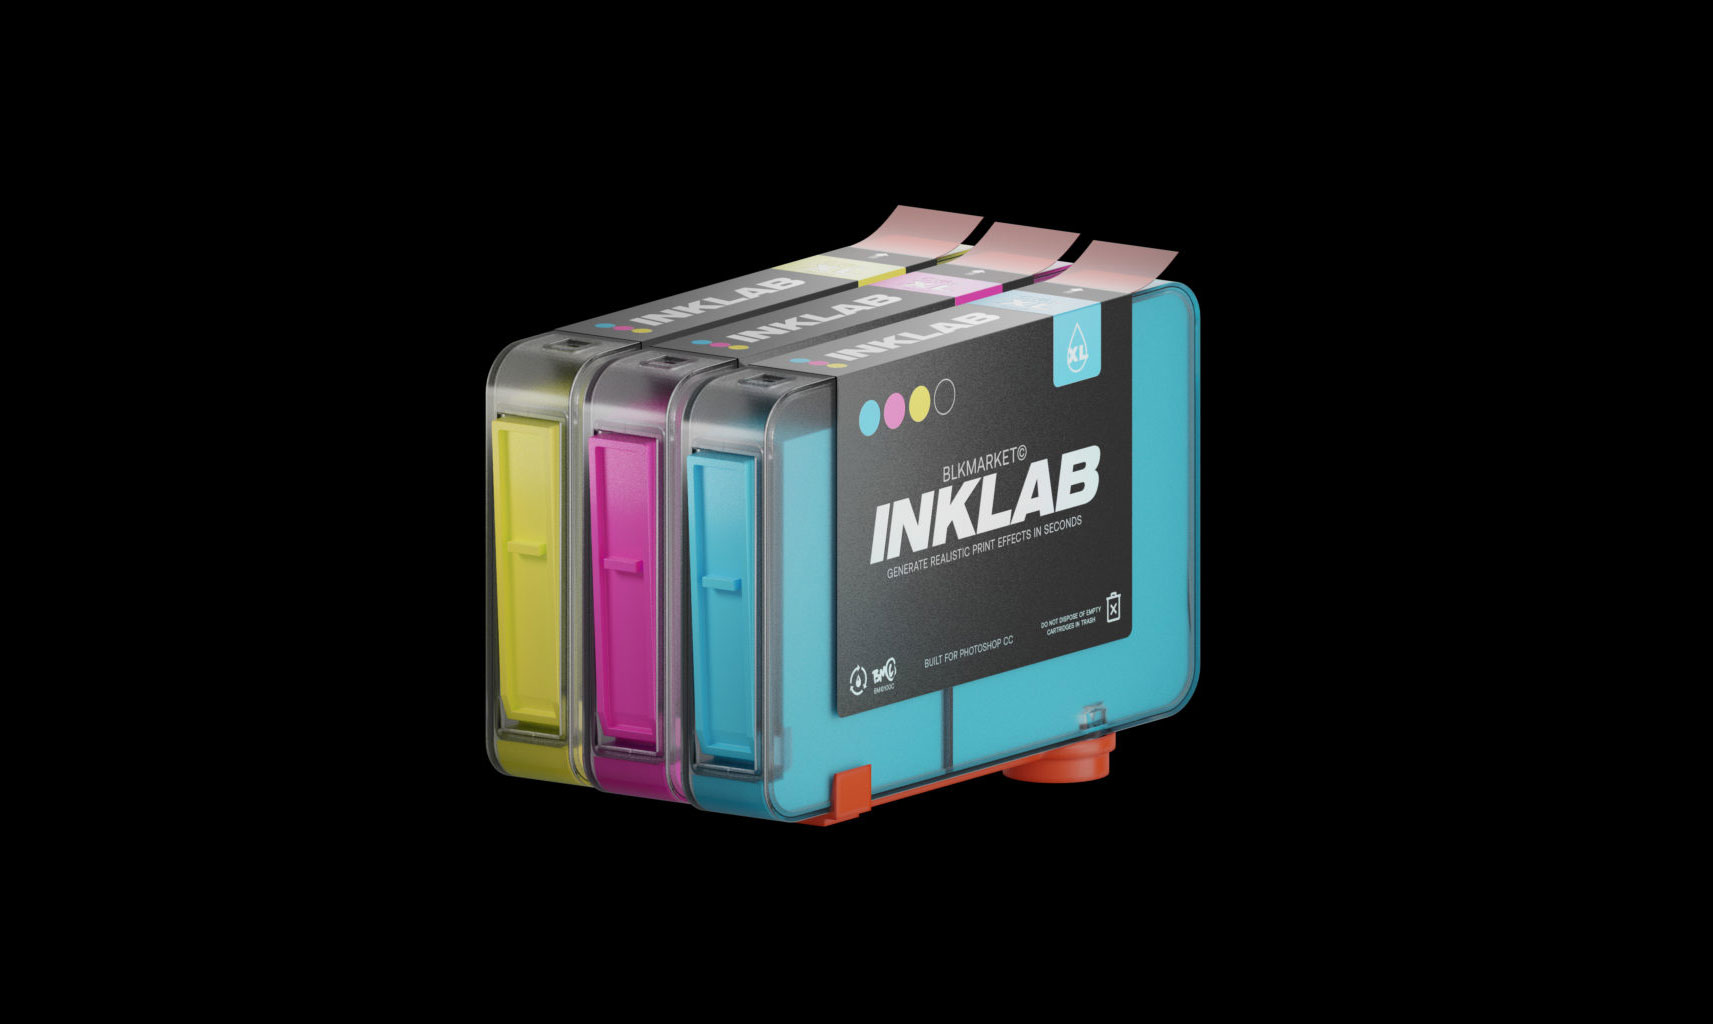 一键式完全可定制墨迹颜色打印效果PS插件 Blkmarket INKLAB XL + Presets v1.0.3 插件预设 第1张